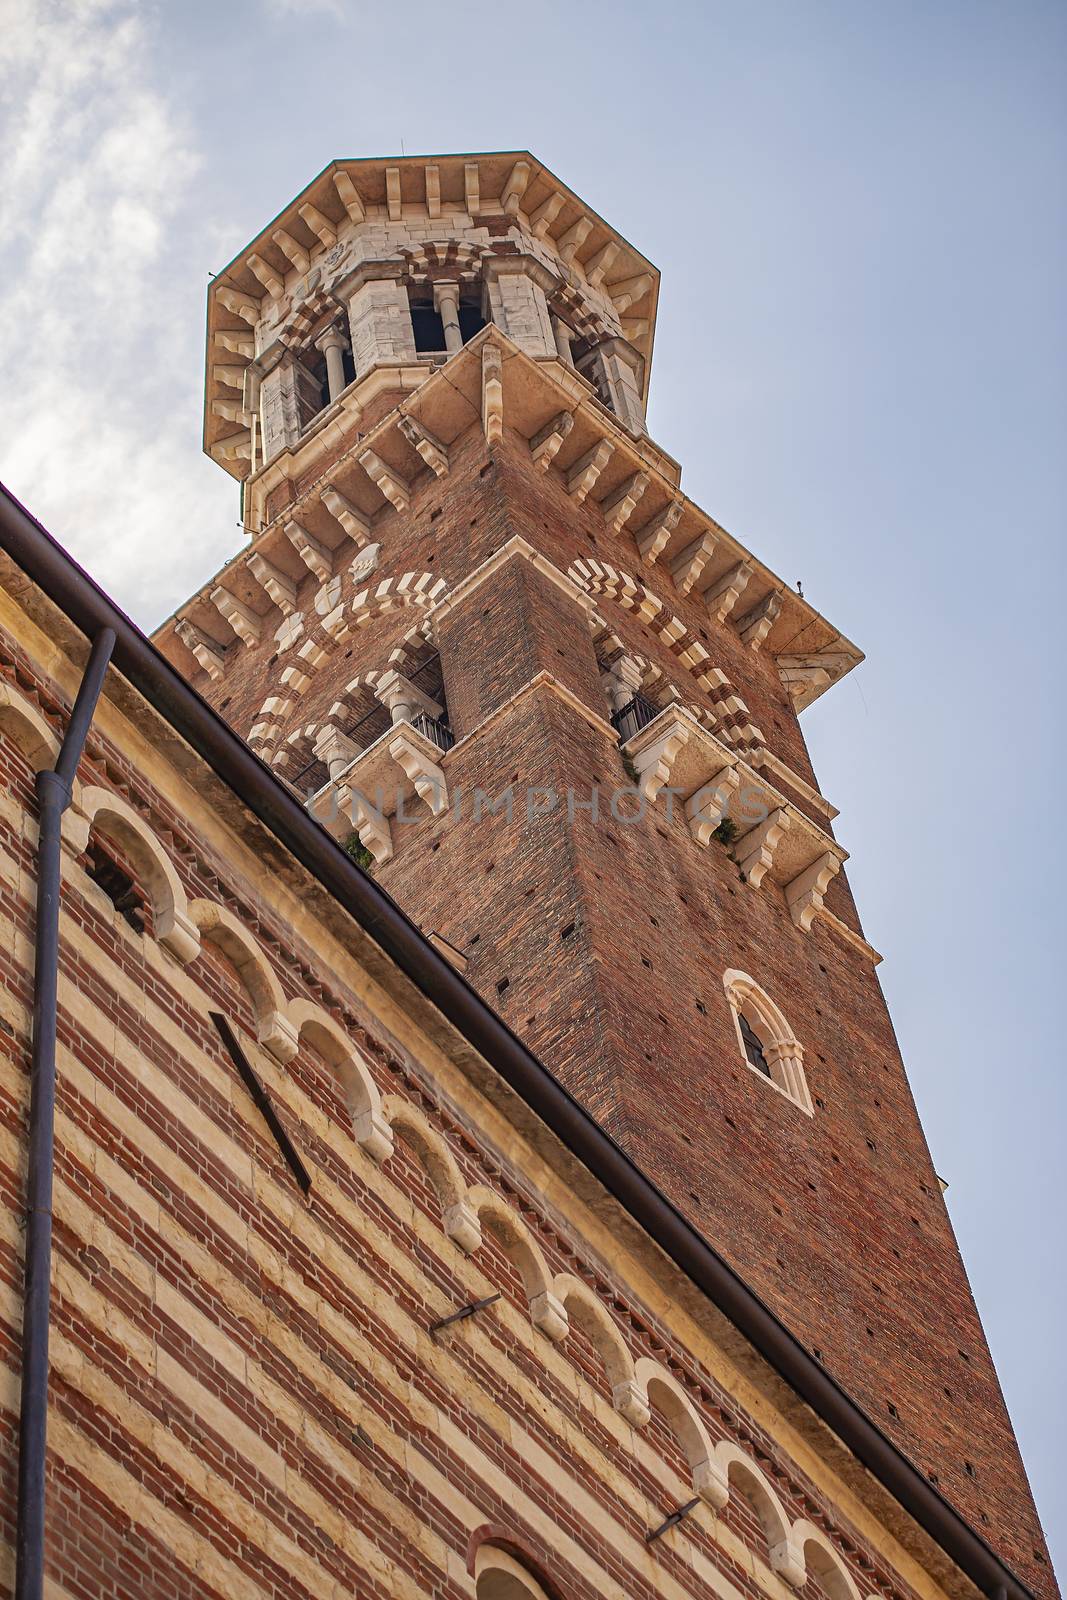 Lamberti tower in Verona by pippocarlot